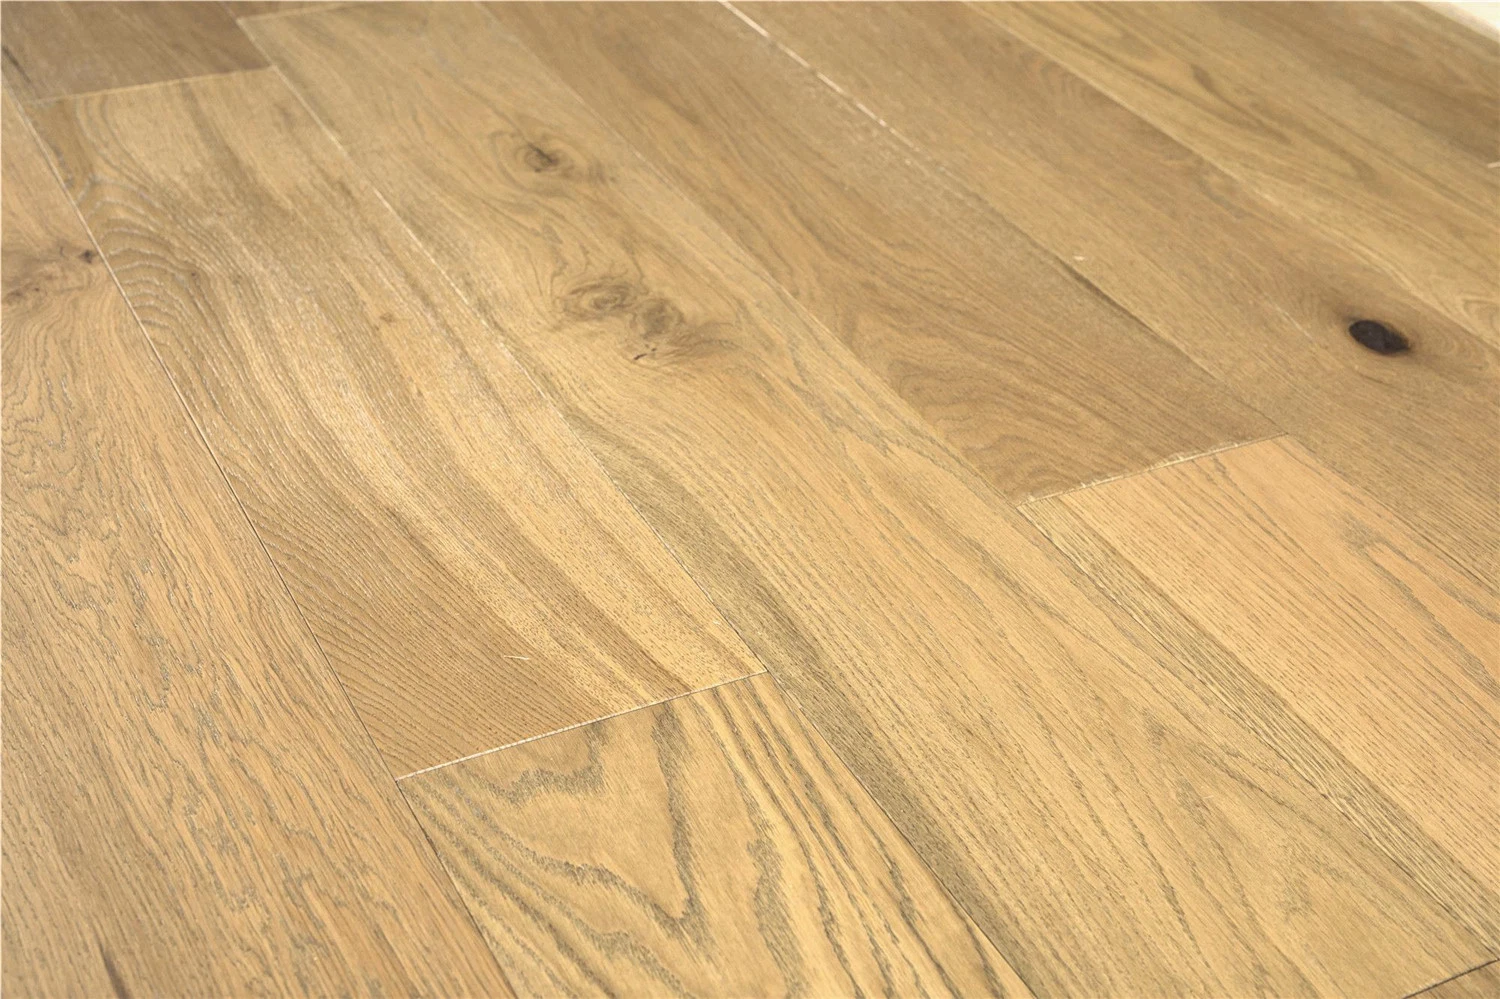 Wide Oak Engineered Wood Flooring/Timber Flooring/Parquet Floor/Wooden Floor Tiles/Wood Floor/Hardwood Flooring